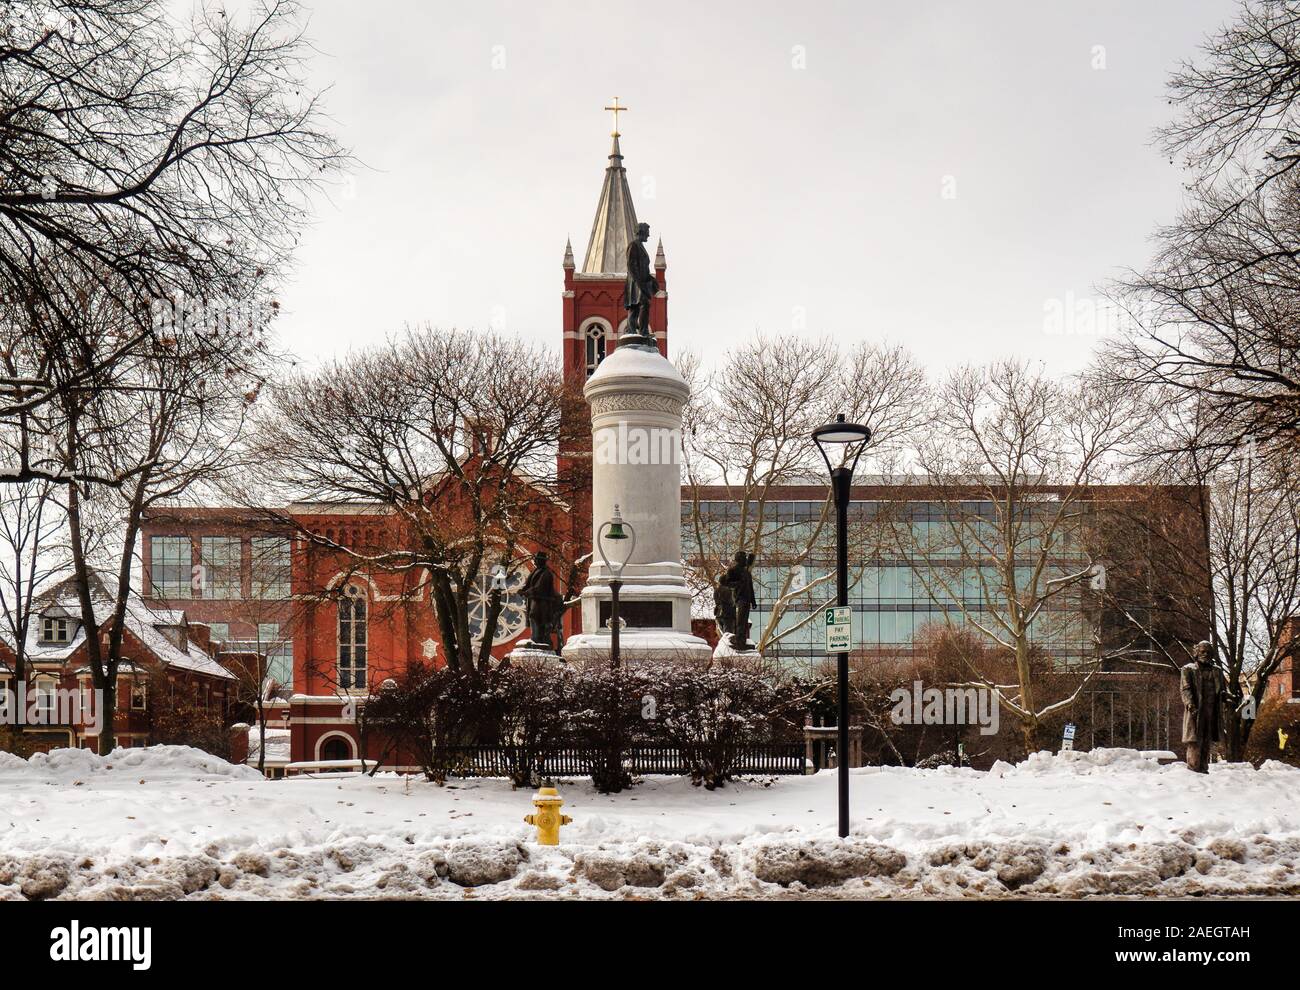 Rochester, New York, USA. Le 8 décembre 2019. Vue de Washington Square Park dans le centre-ville de Rochester, New York après une chute de neige à la fin de l'automne avec les Soldi Banque D'Images